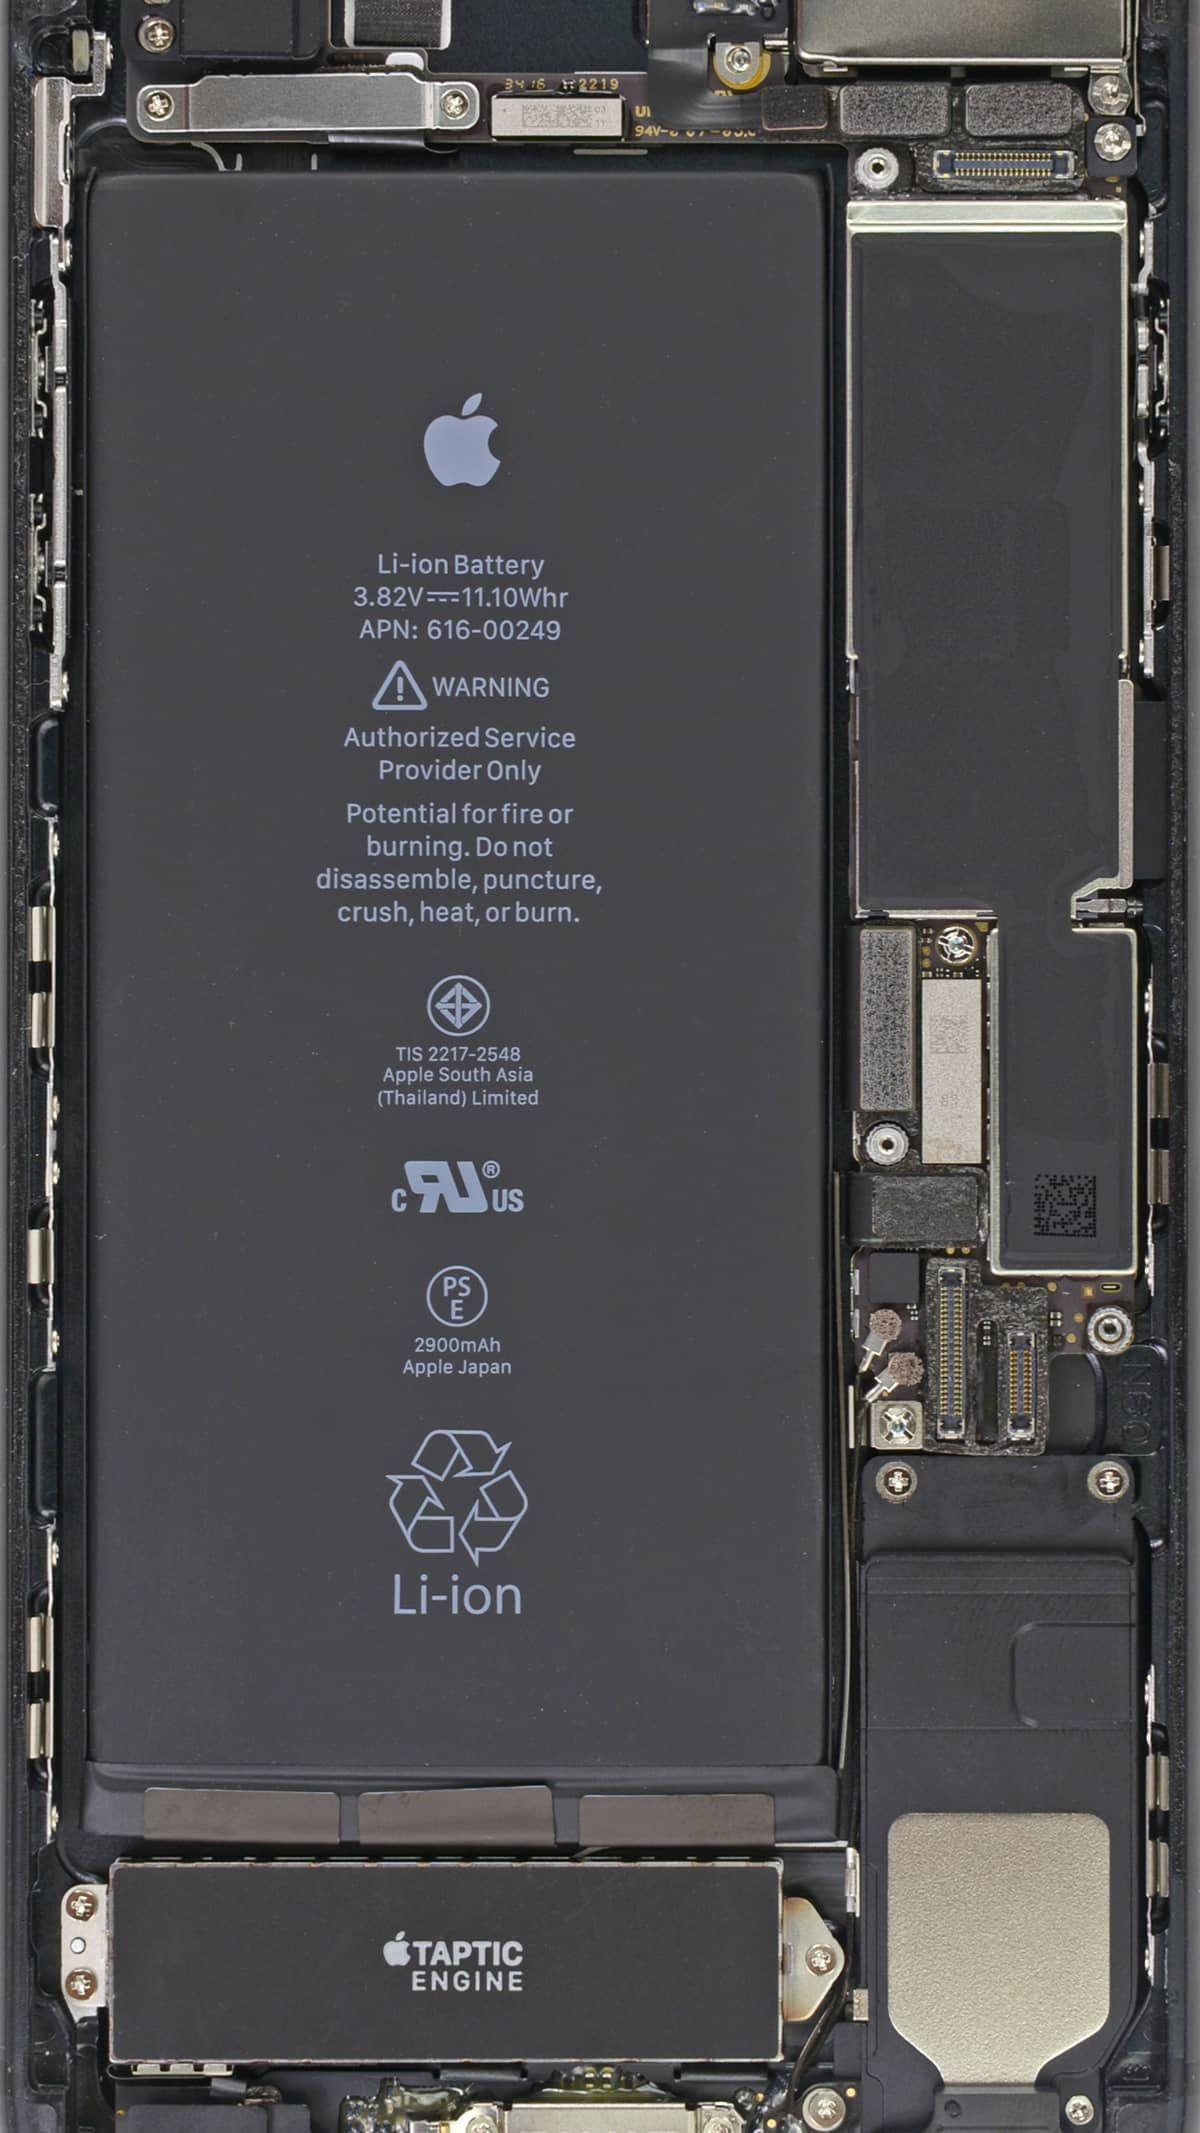 Battery Scientist Joins Debate on iPhone Throttling. Apple wallpaper iphone, Hypebeast iphone wallpaper, iPhone wallpaper vaporwave